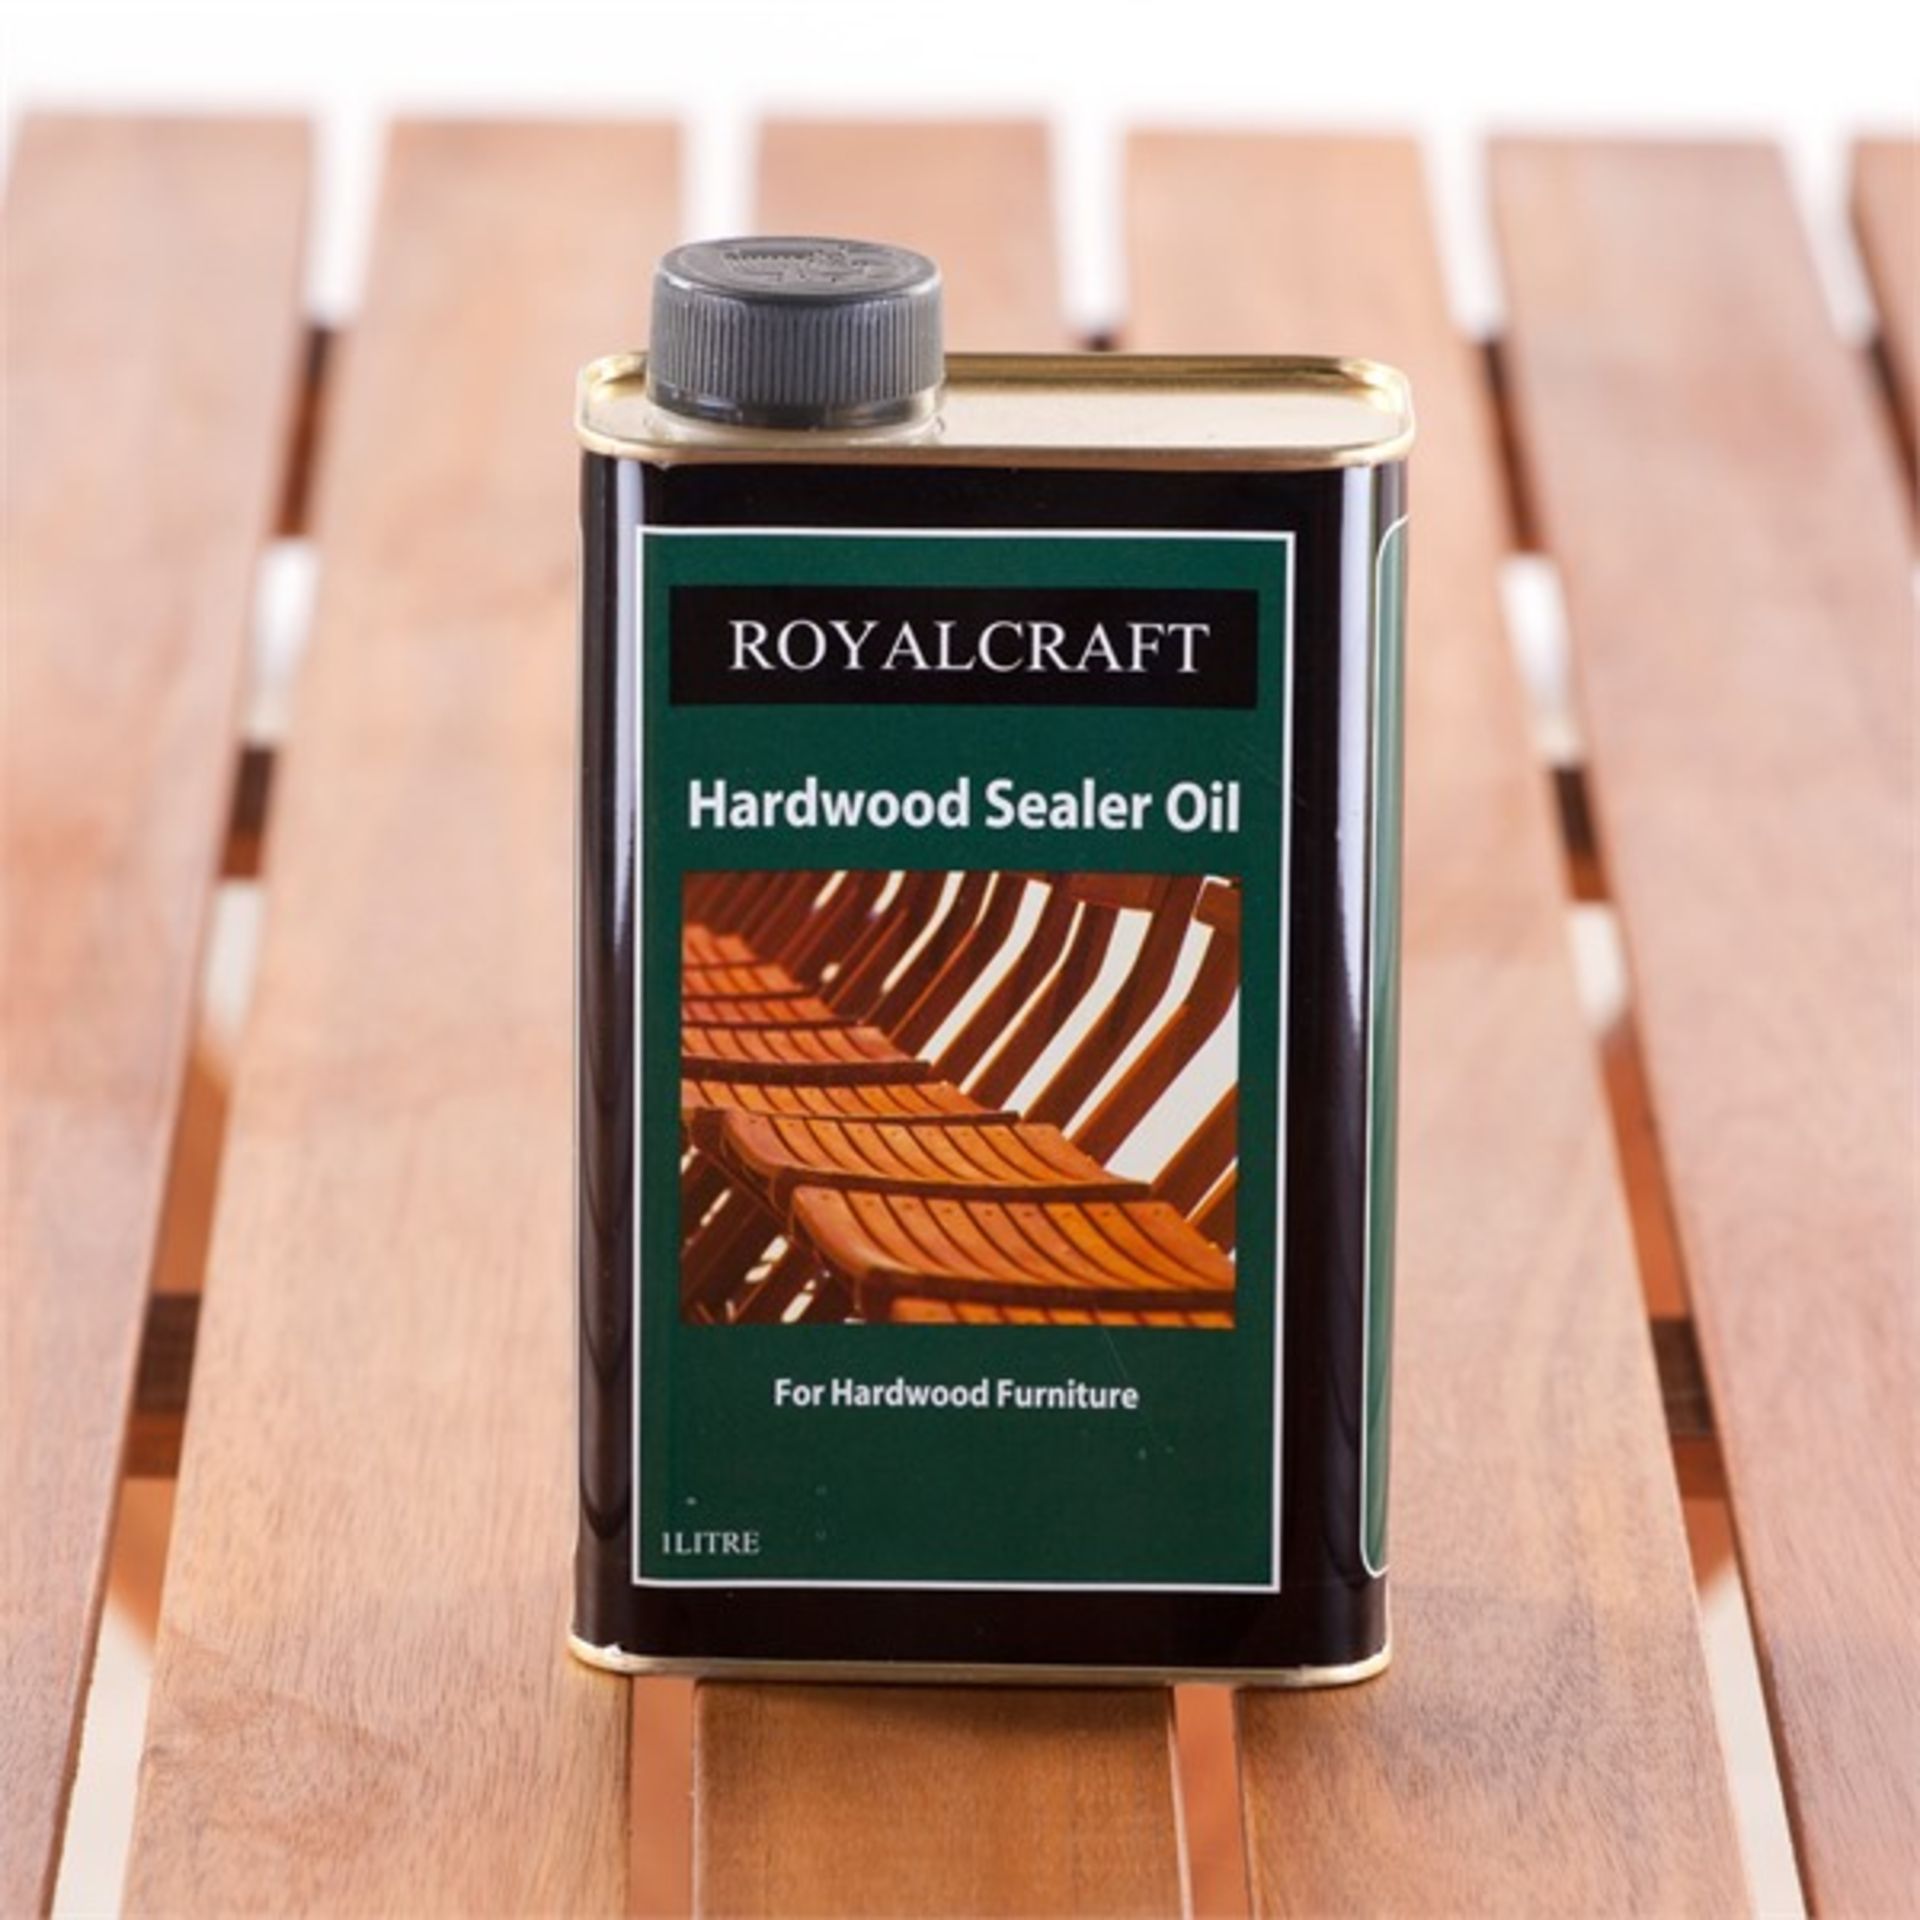 + VAT Brand New Royal Craft 1Ltr Hardwood Sealer Oil For Hardwood Furniture - eBay Price £13.55